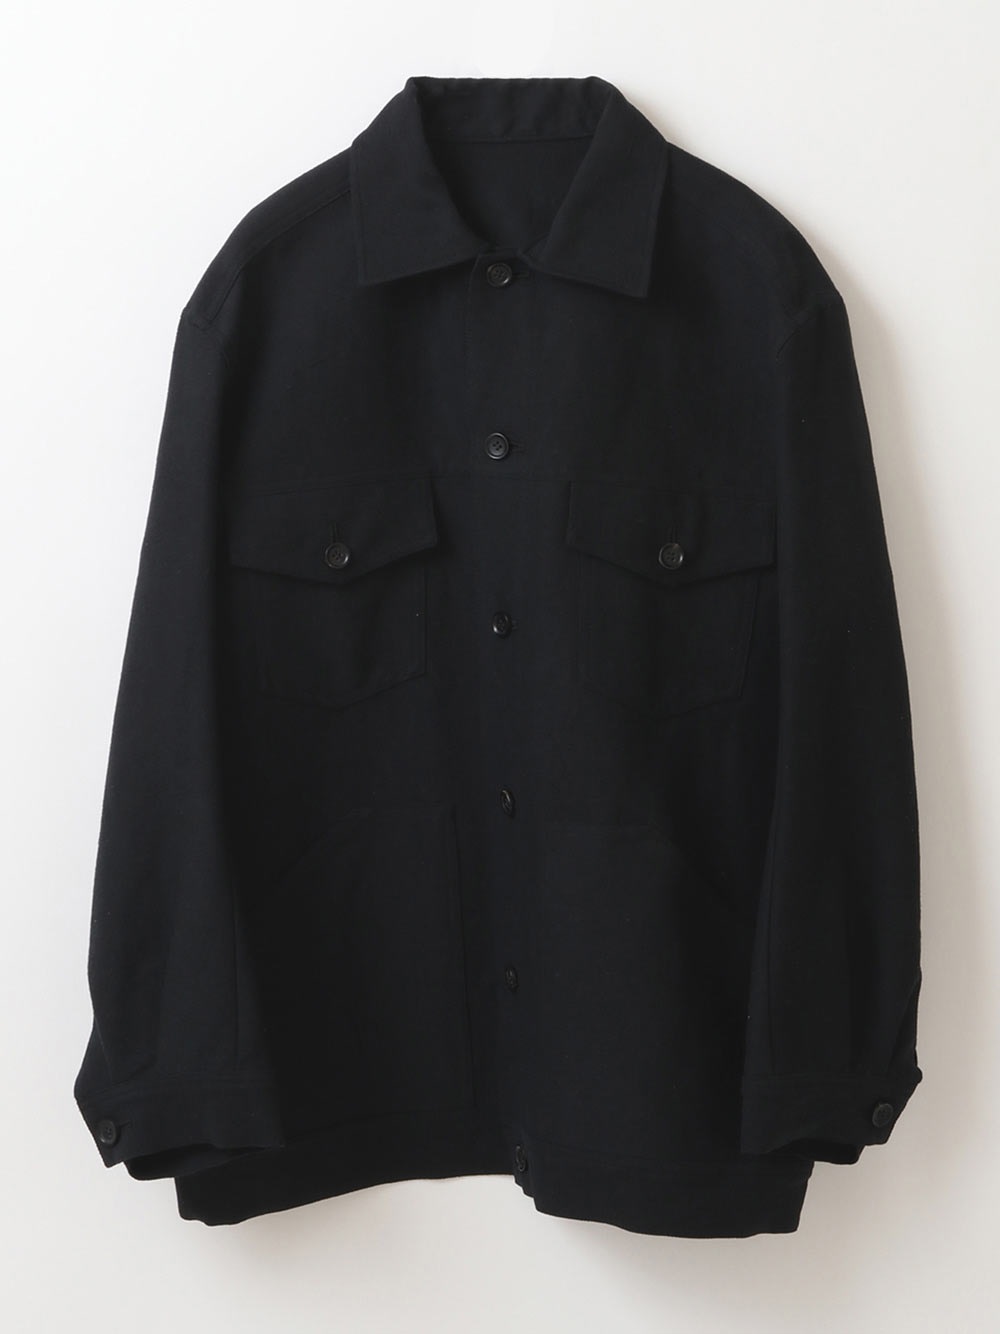 Work Jacket(00ブラック-フリー)